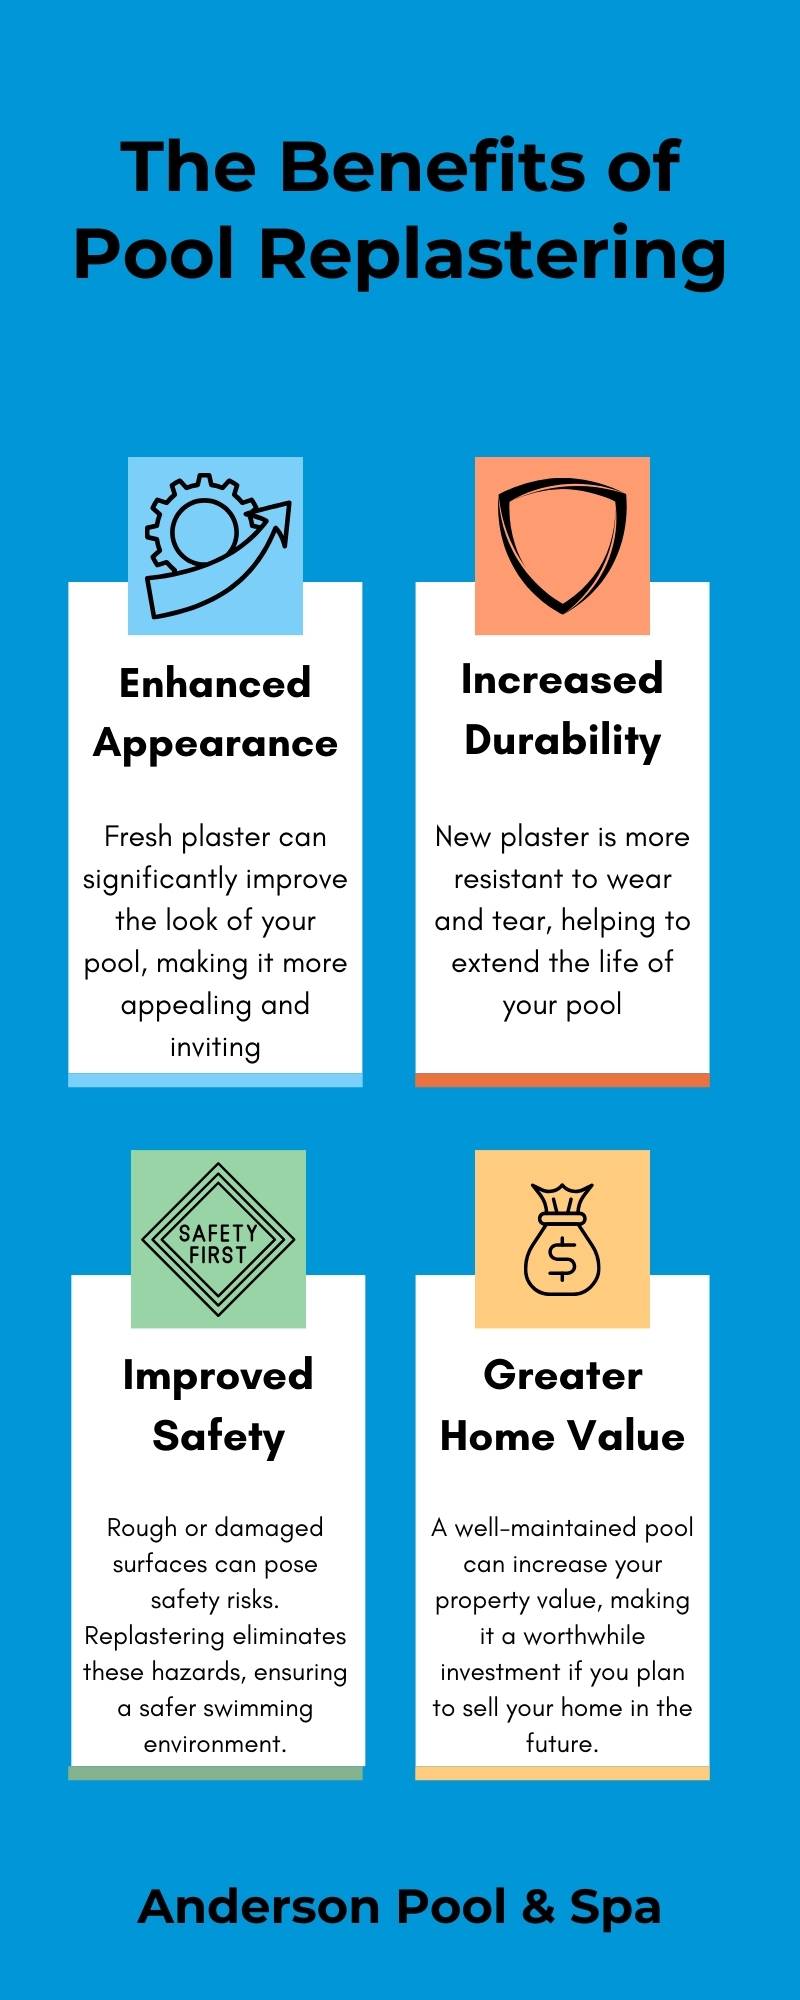 Orange County Pool Replaster: Infographic